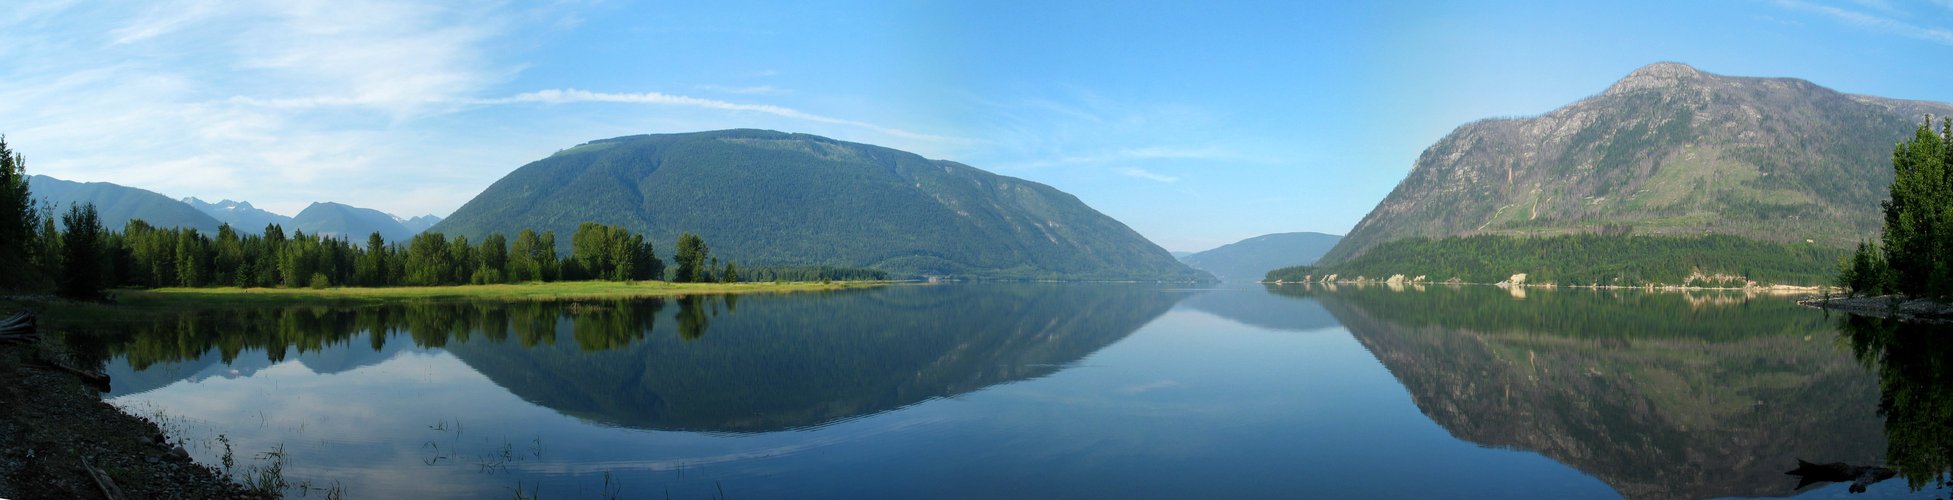 Spiegelsee Panorama Kanada